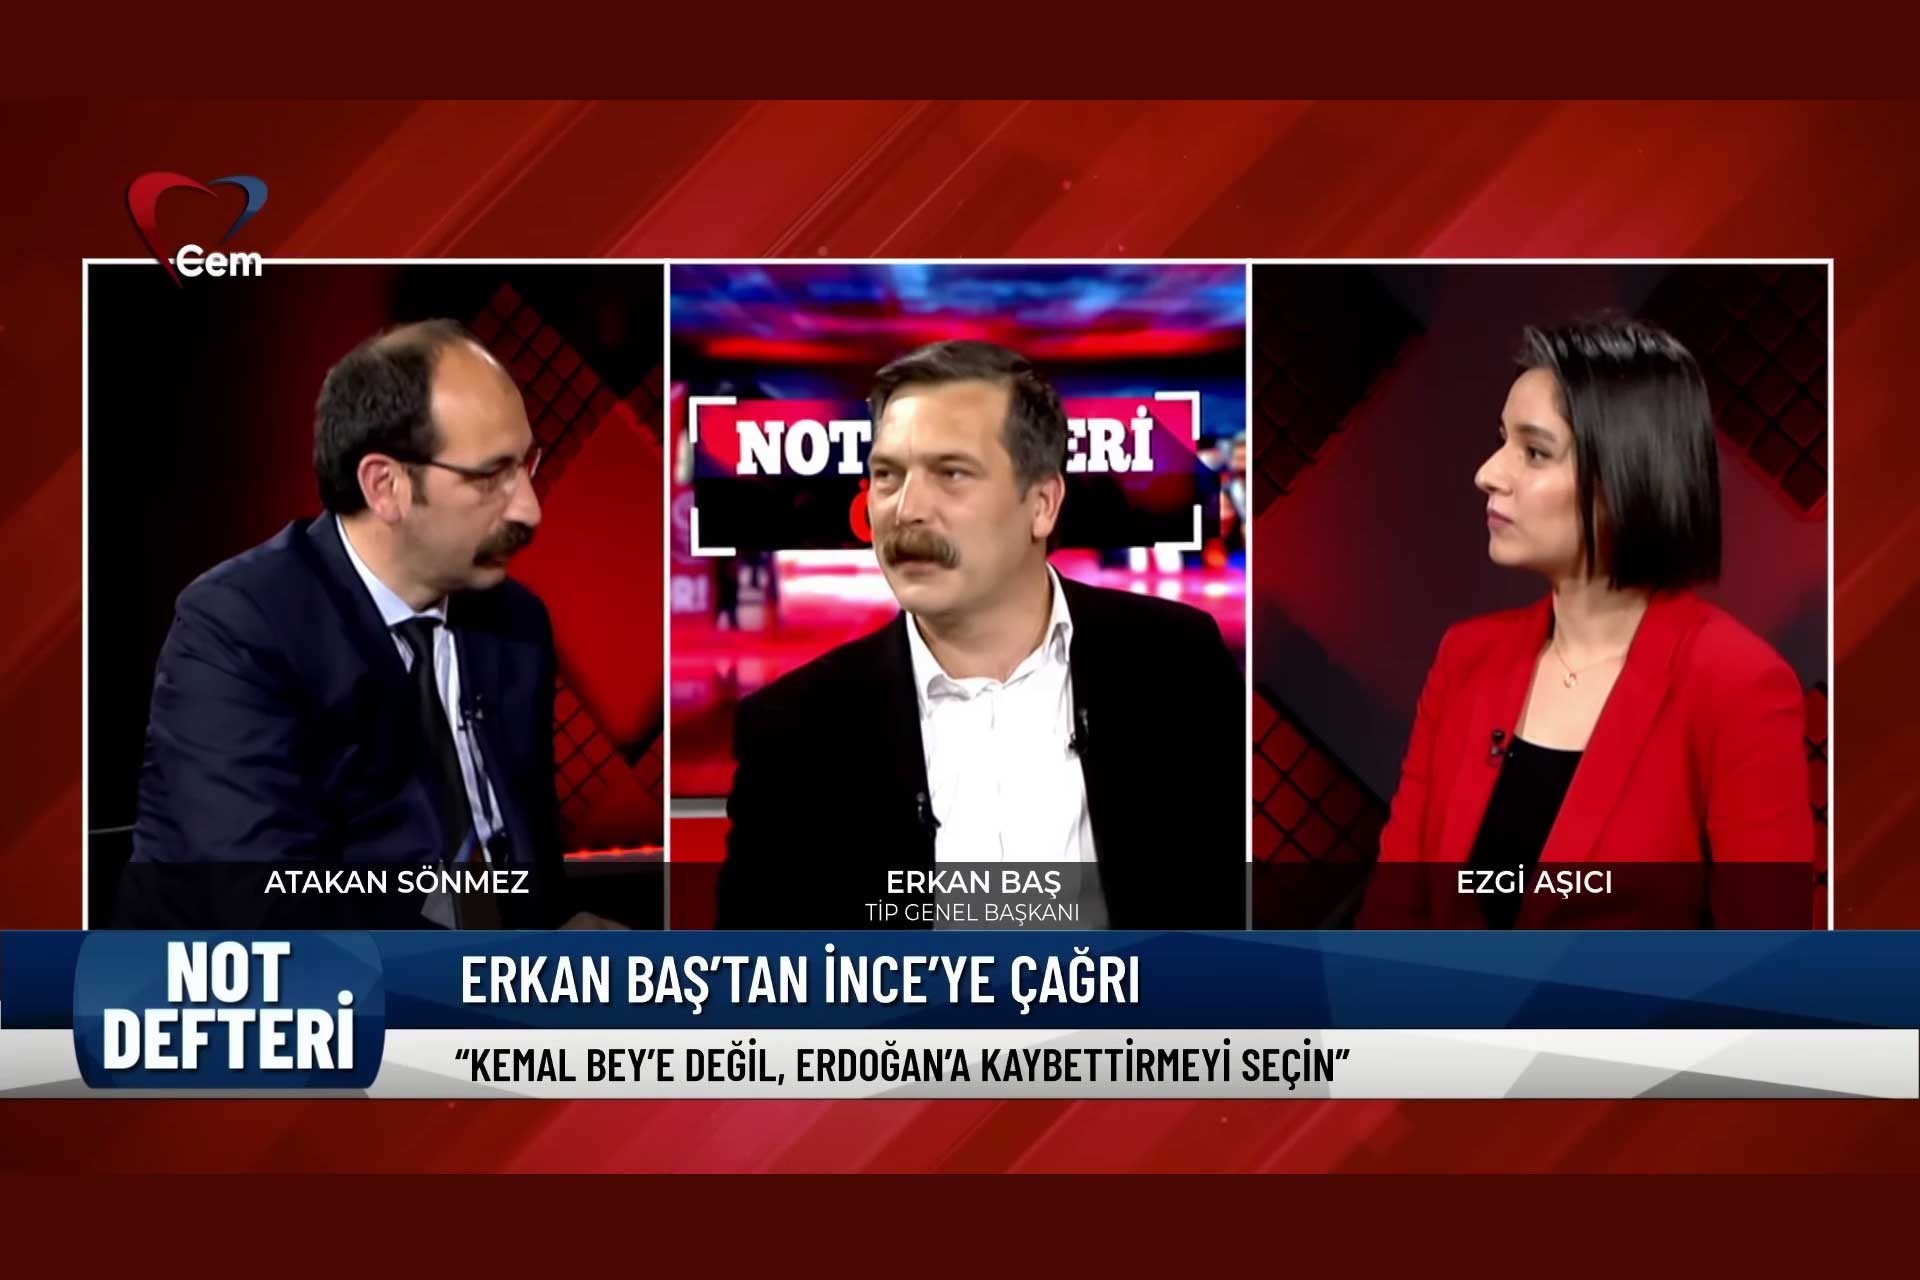 Erkan Baş'ın çarpıtılan sözleri hakkında TİP'ten açıklama